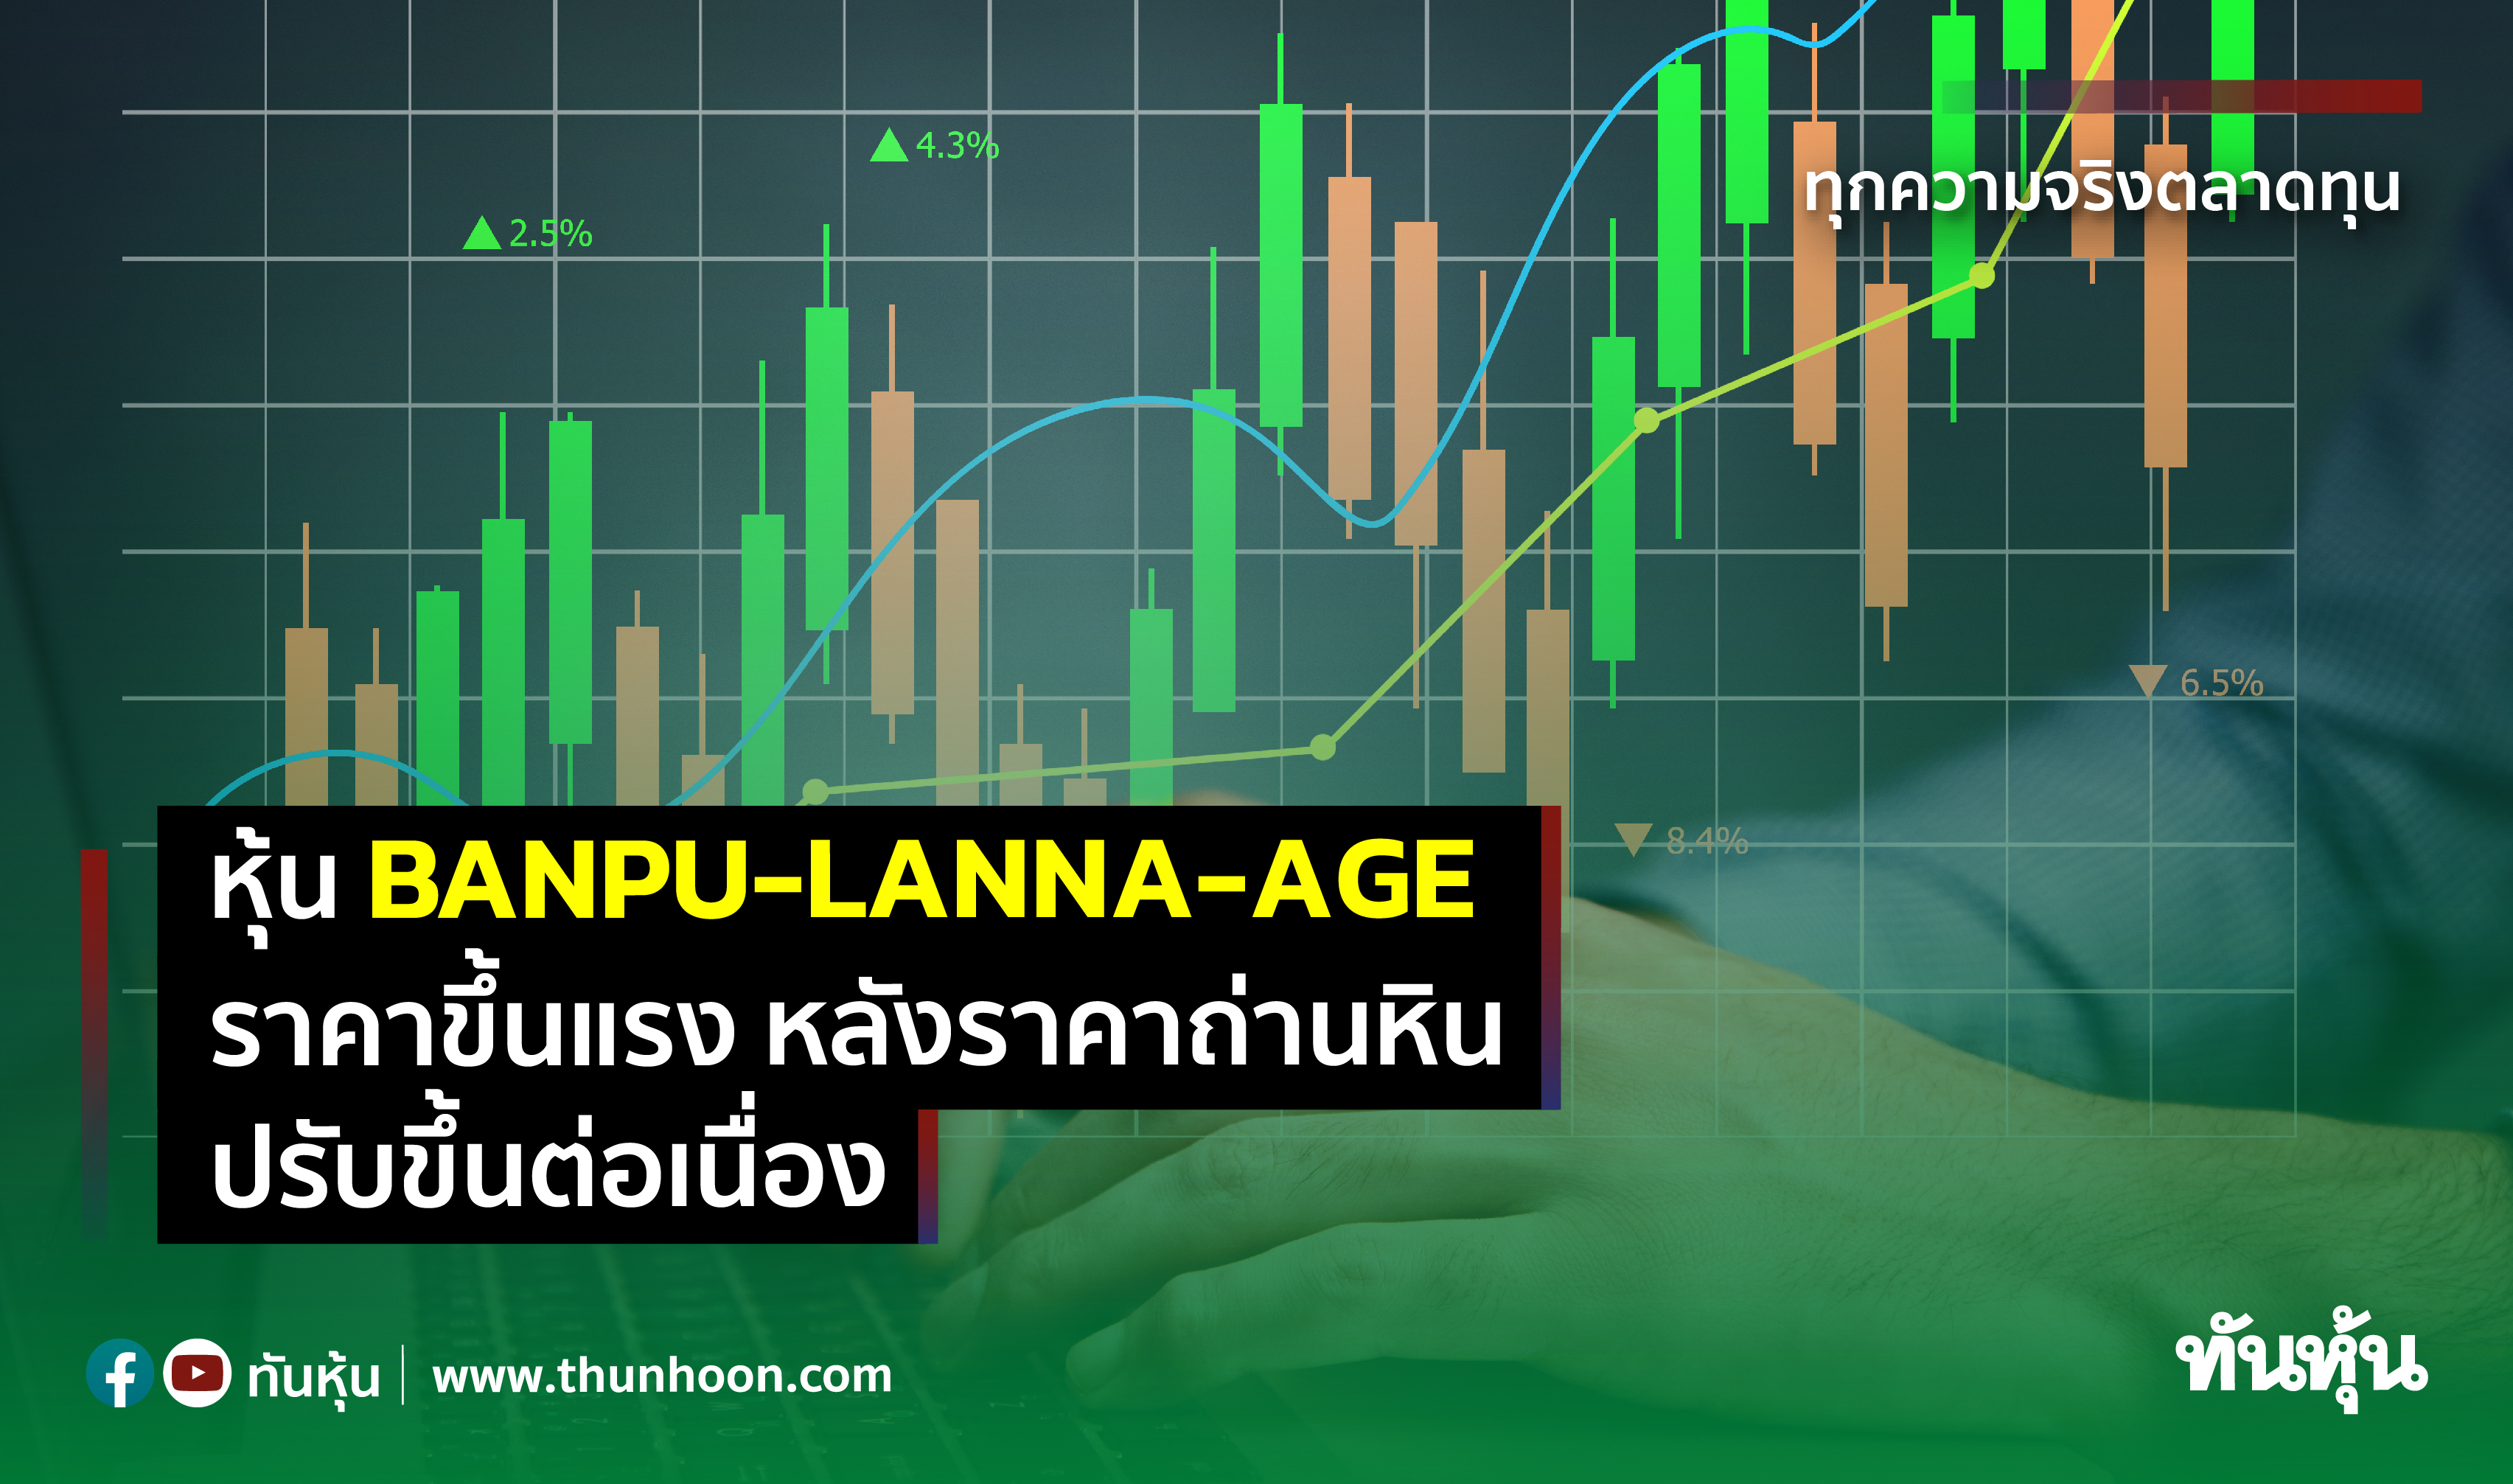 หุ้น BANPU-LANNA-AGE ราคาขึ้นแรง หลังราคาถ่านหินปรับขึ้นต่อเนื่อง